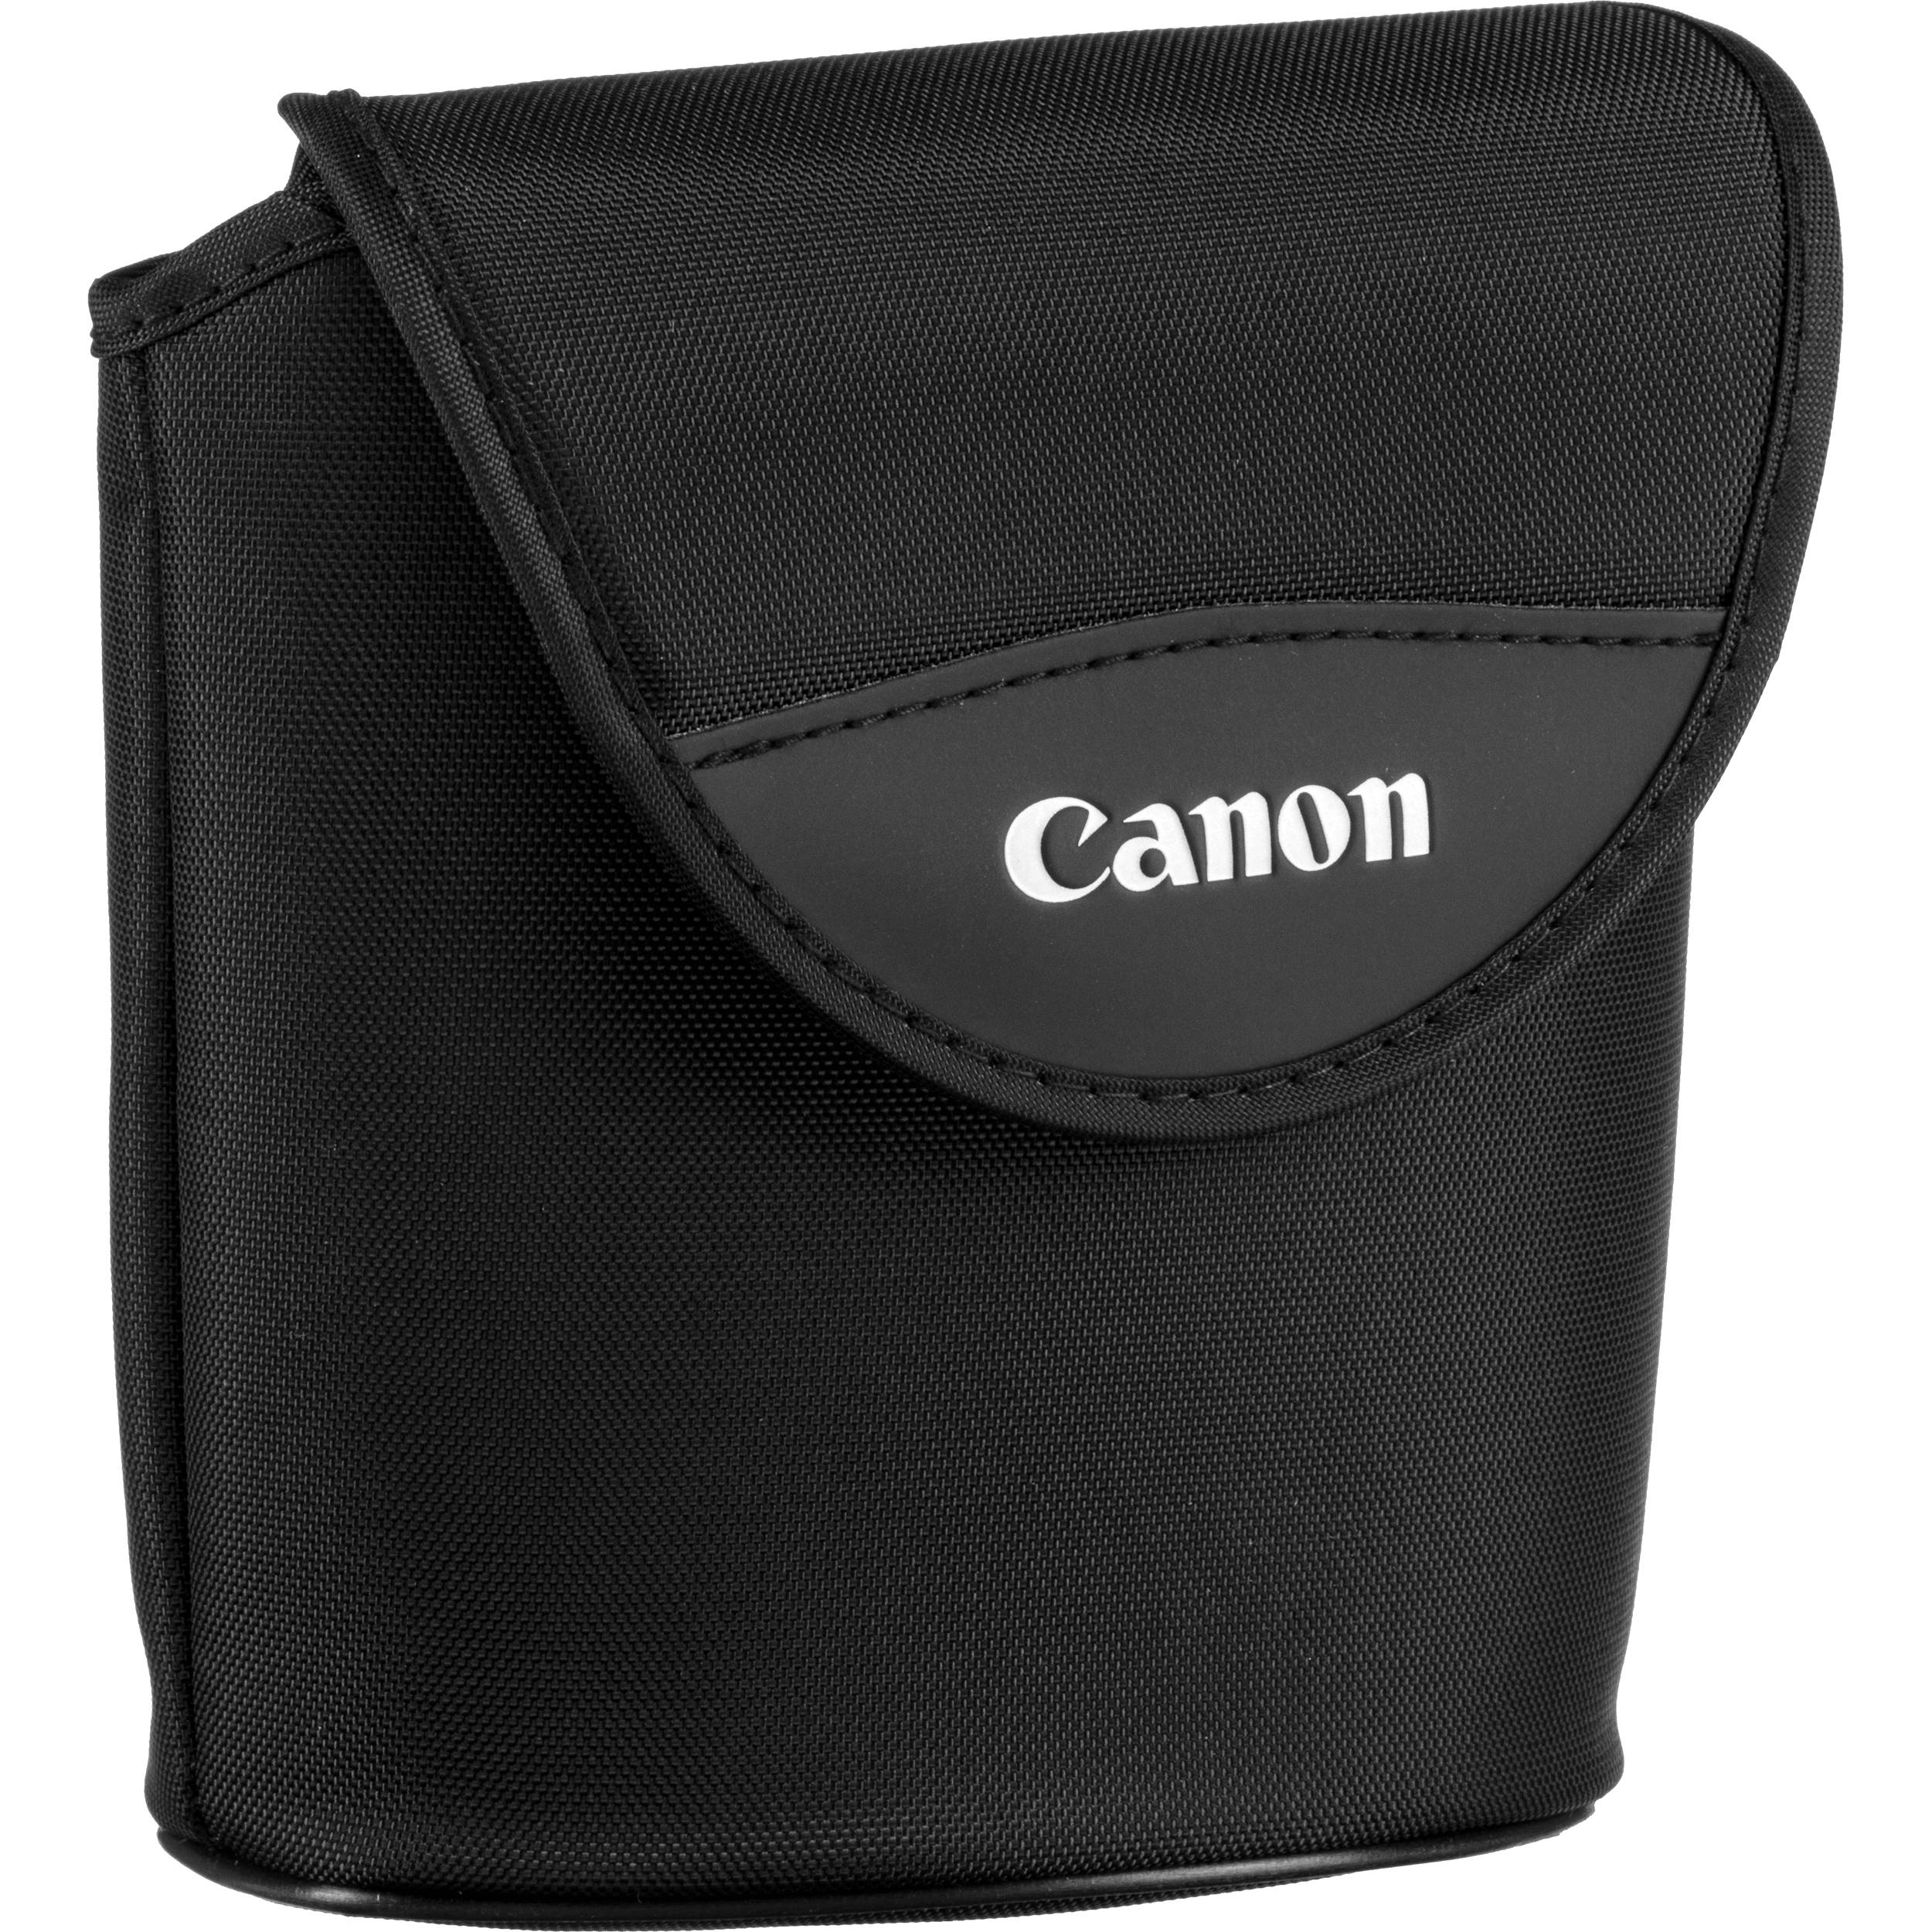 Canon 8x20 IS & 10x20 IS Binoculars – Should You Buy? - YouTube